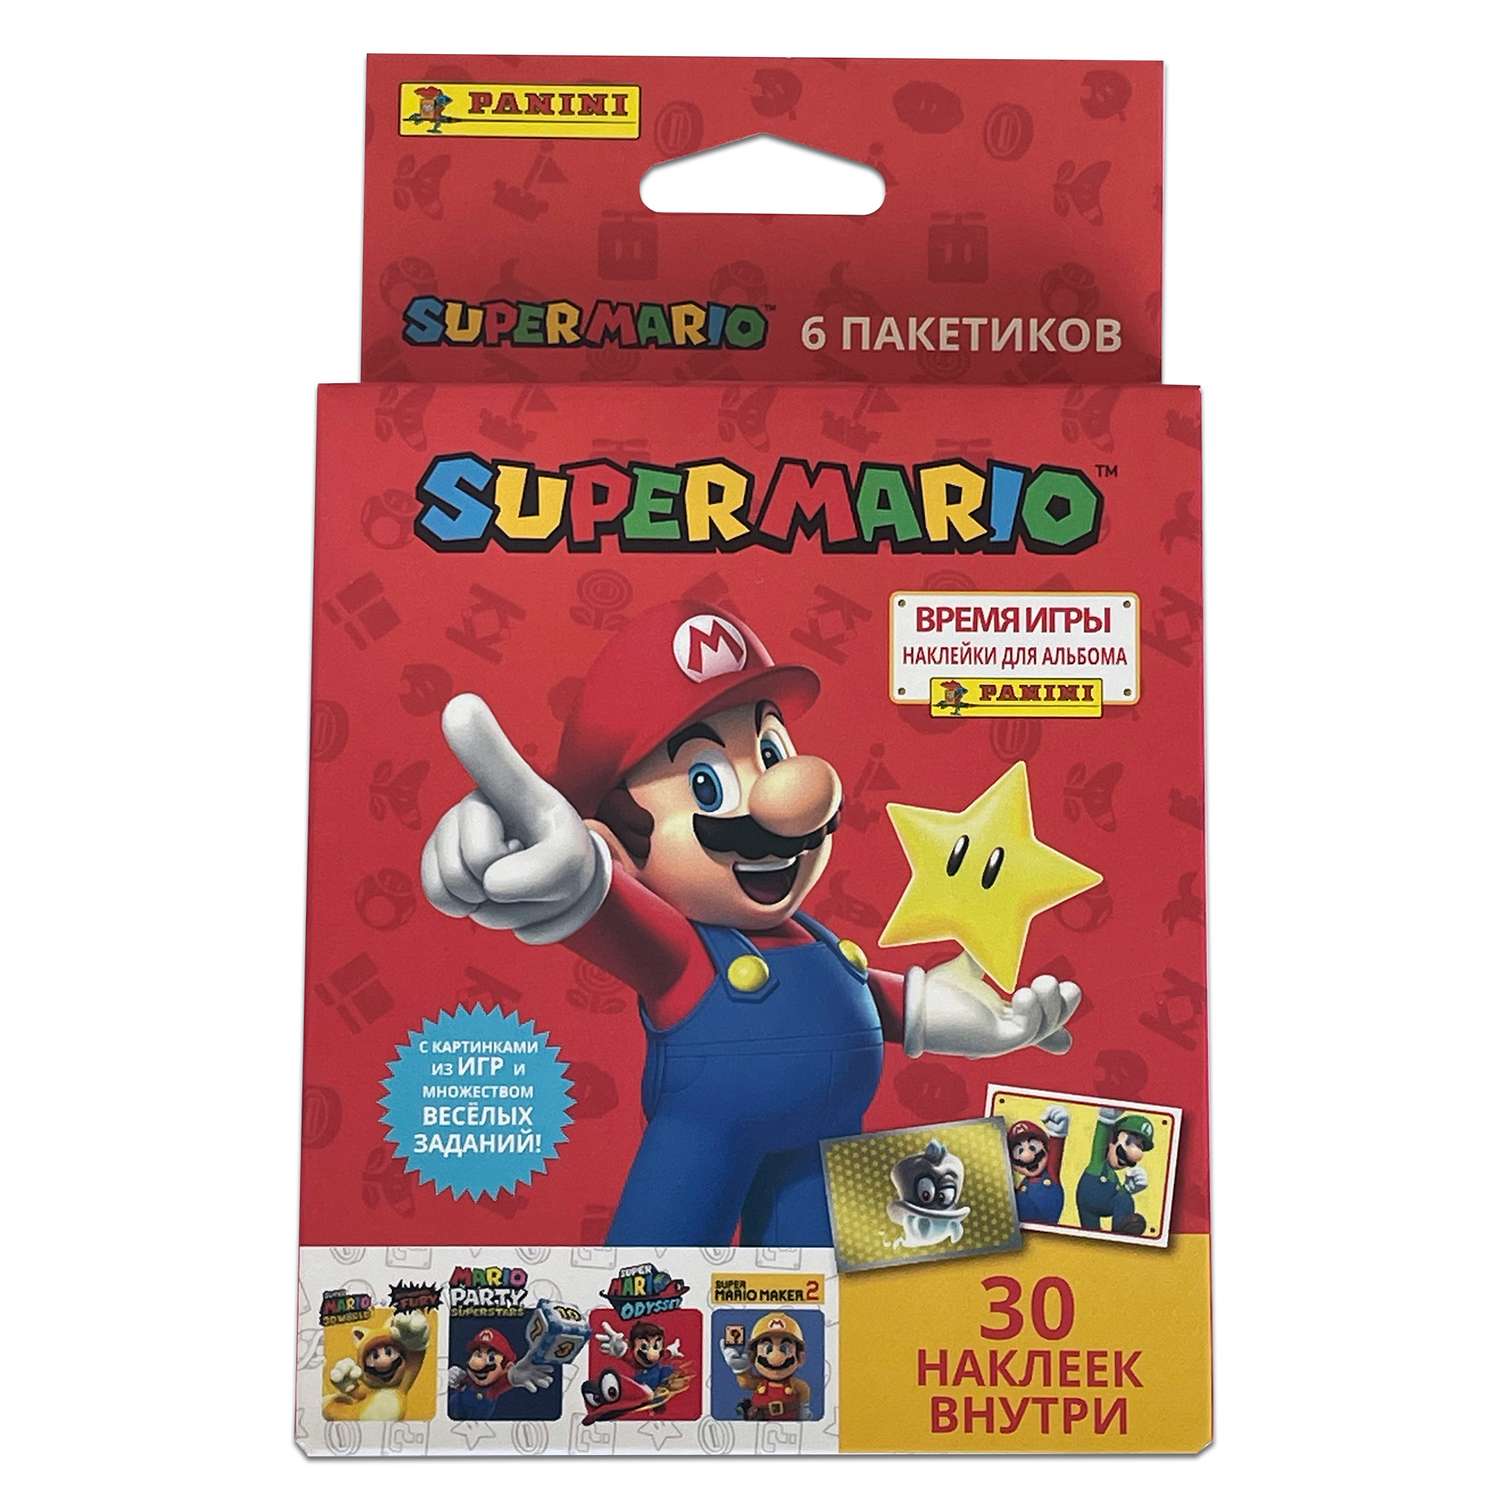 Наклейки коллекционные Panini Super Mario Супер Марио 6 пакетиков в экоблистере - фото 1